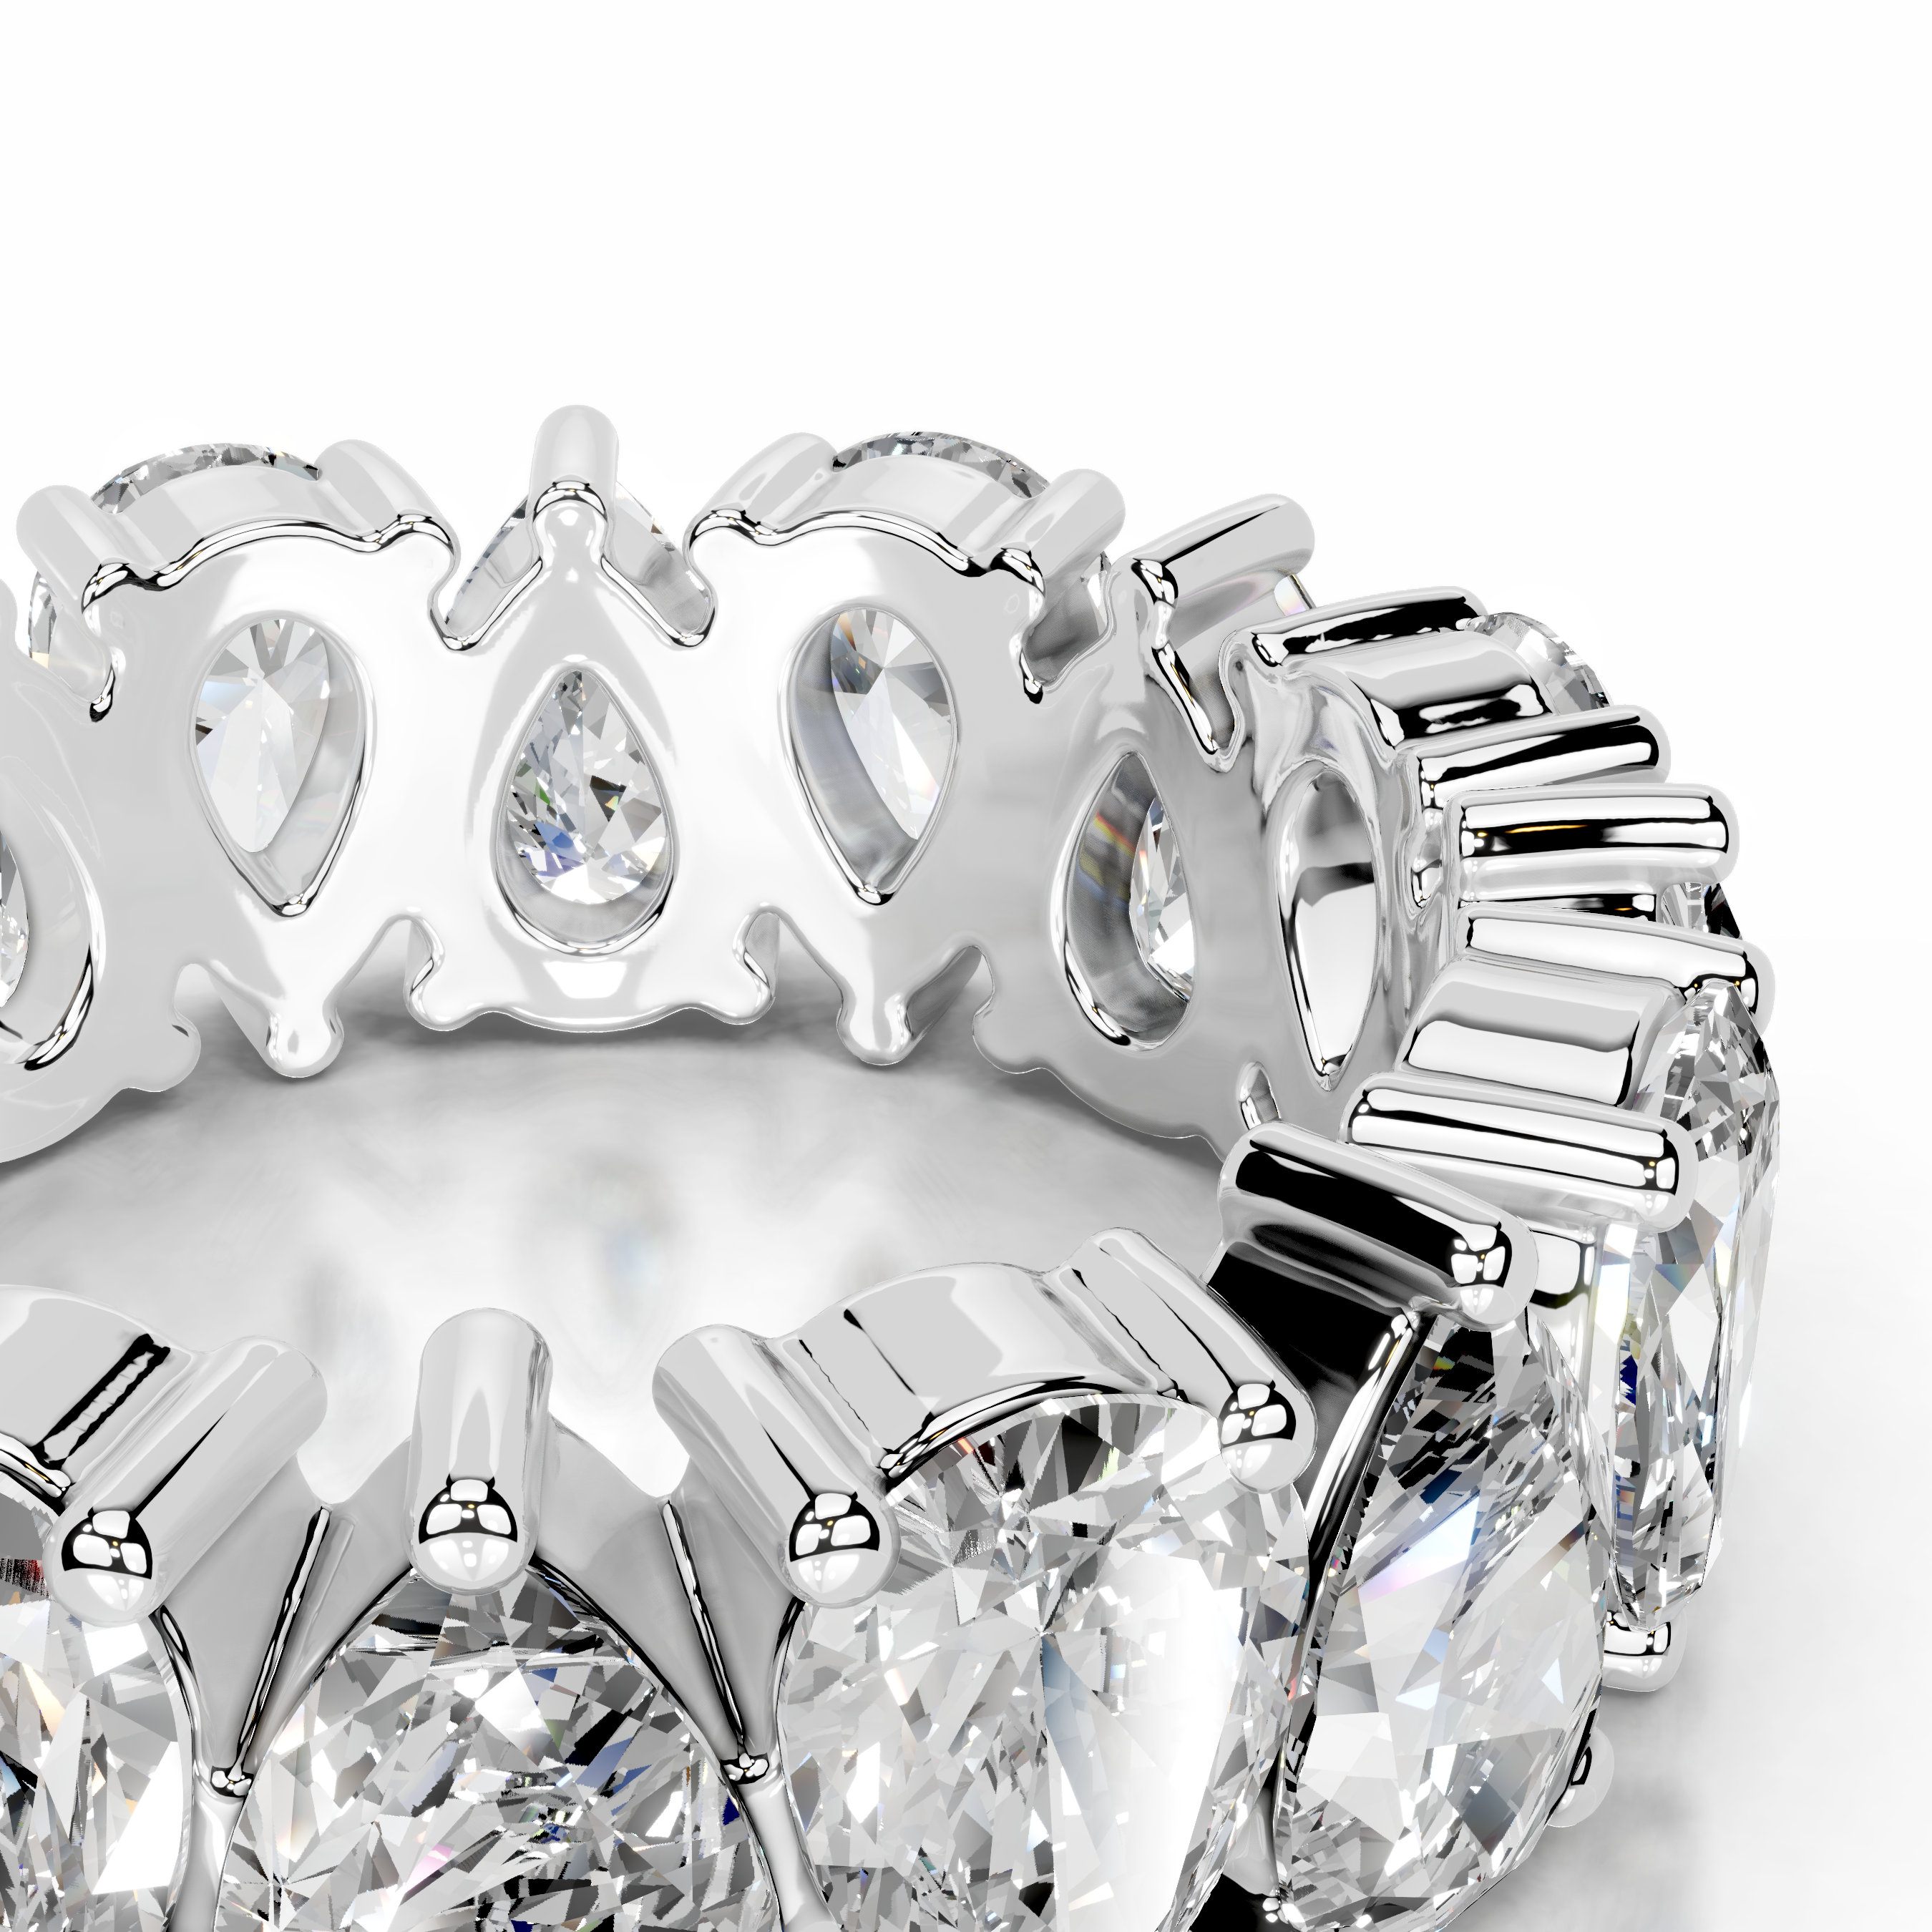 Sarah Diamond Wedding Ring   (6 Carat) -18K White Gold